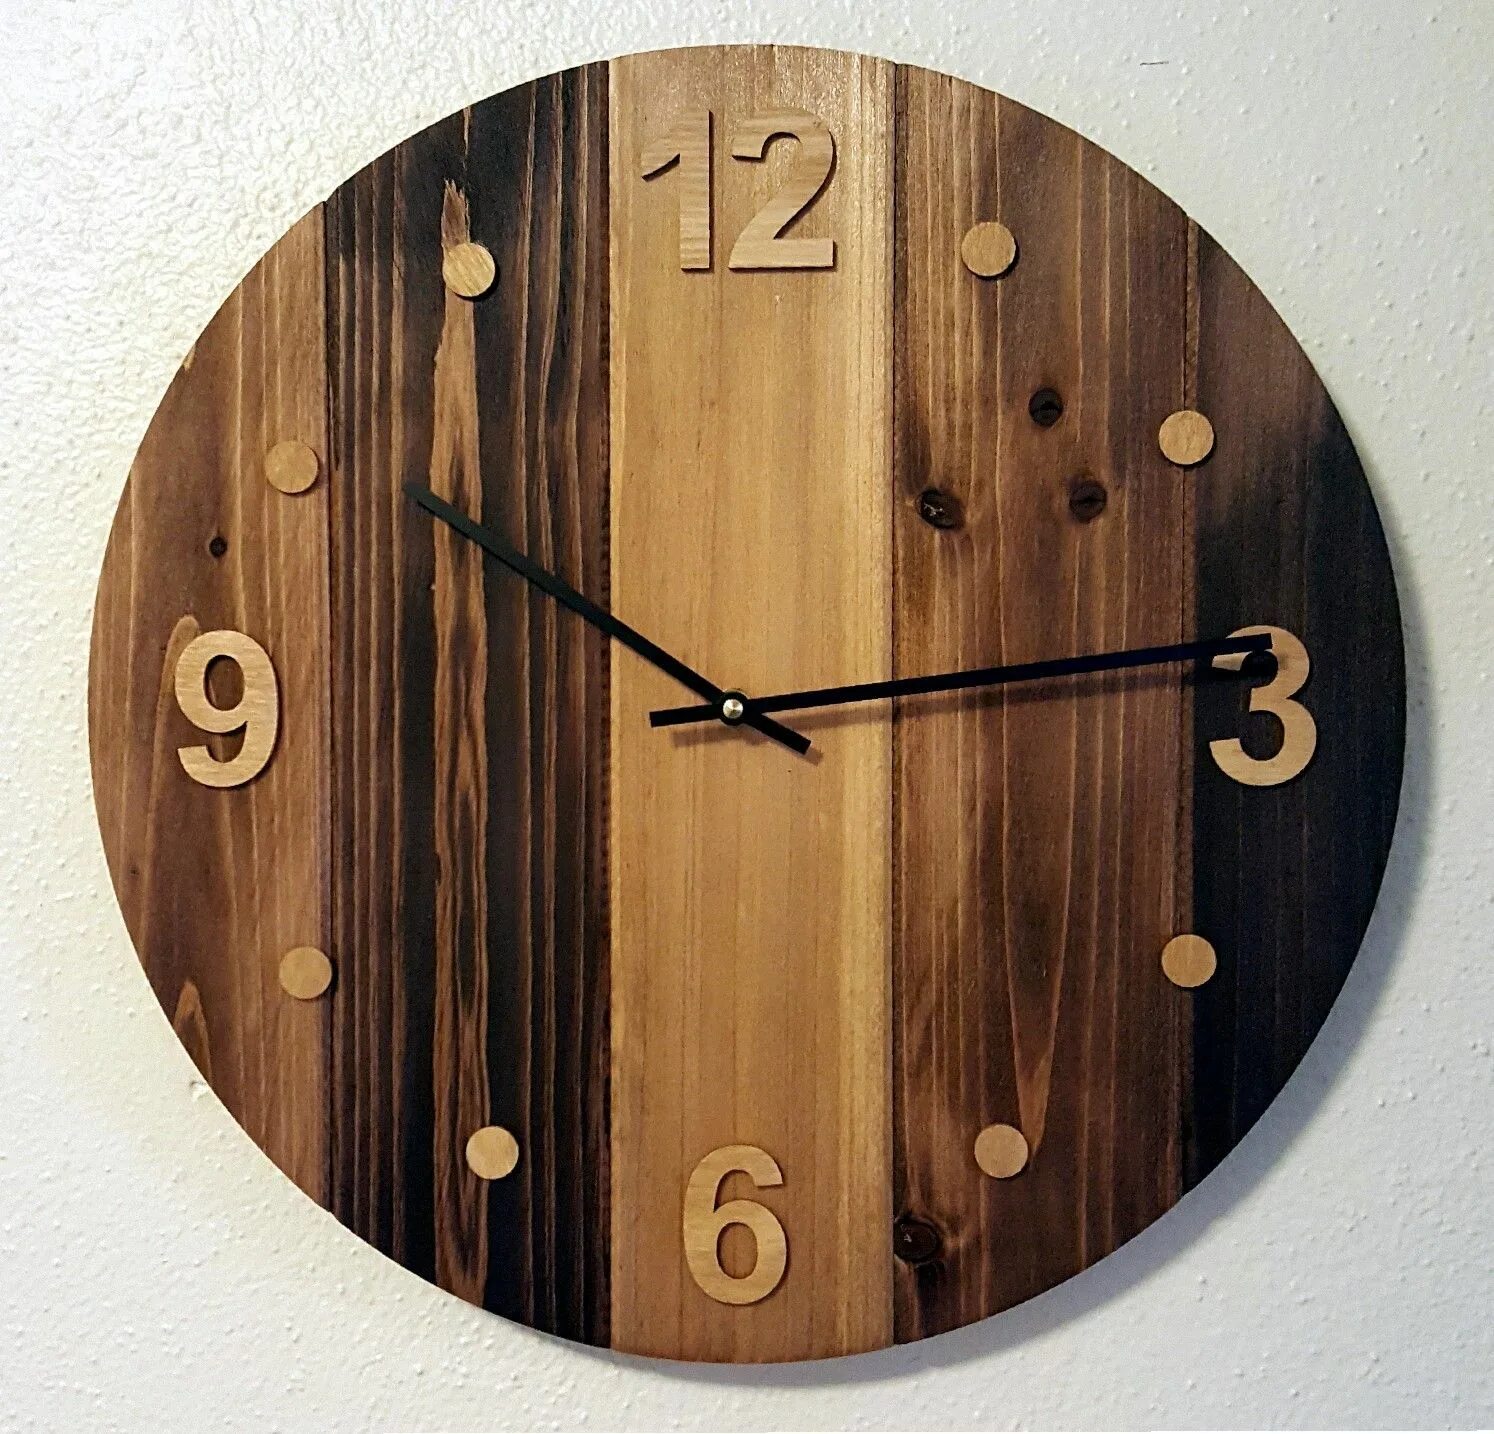 Простые формы часов. Часы из дерева. Часы настенные деревянные. Необычные настенные часы из дерева. Часы из дерева настенные.